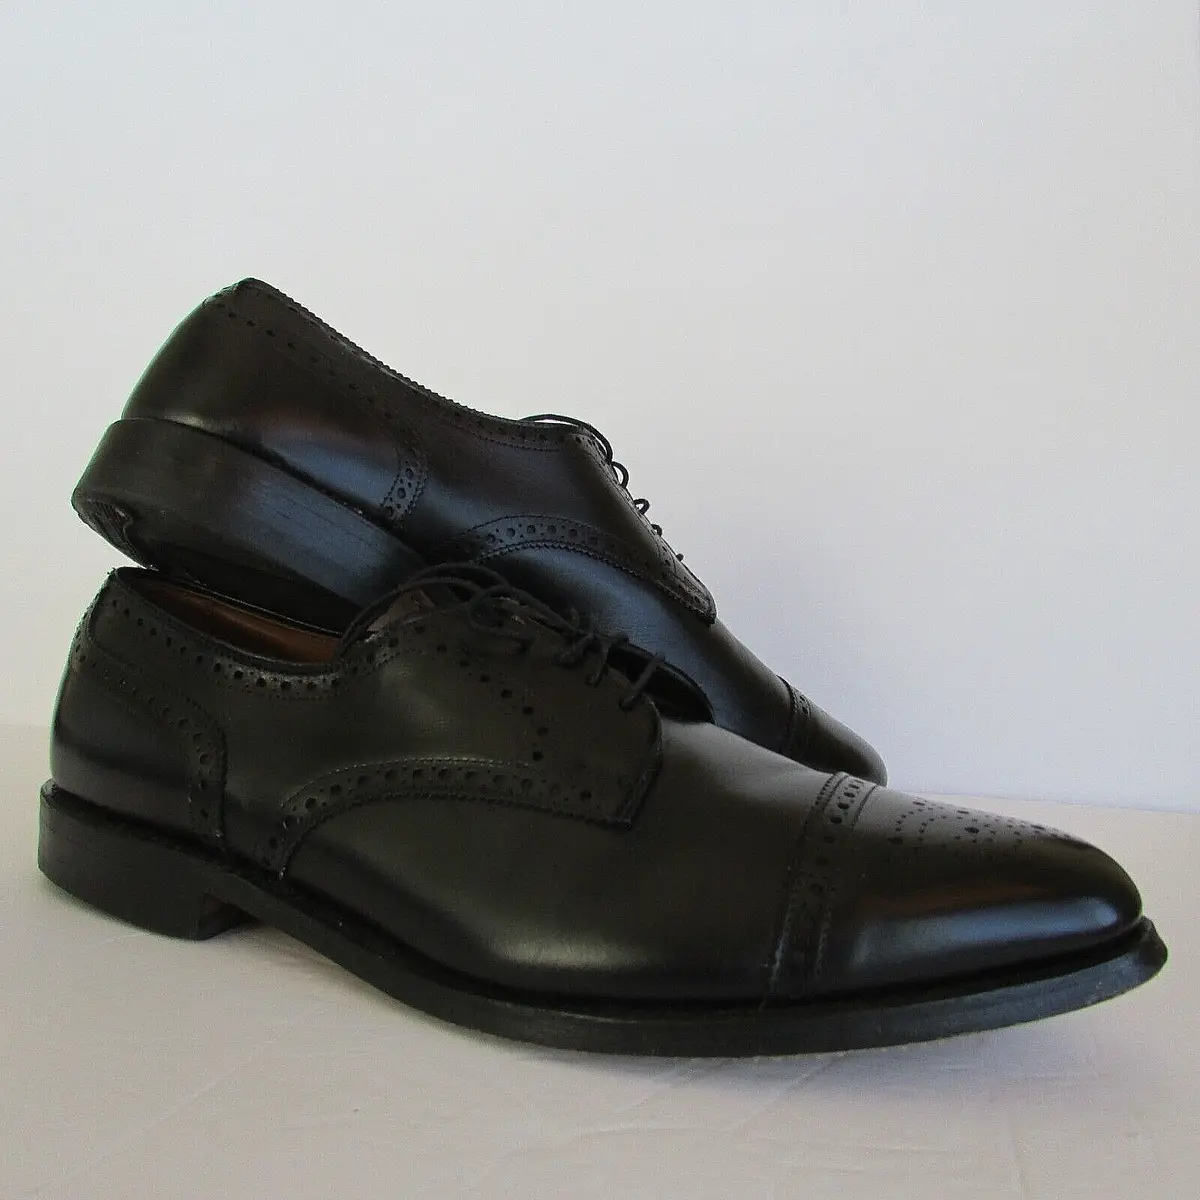 Allen Edmonds AE “Sanford” Black Leather WING TIP Cap Toe Oxfords  Shoes-11.5C